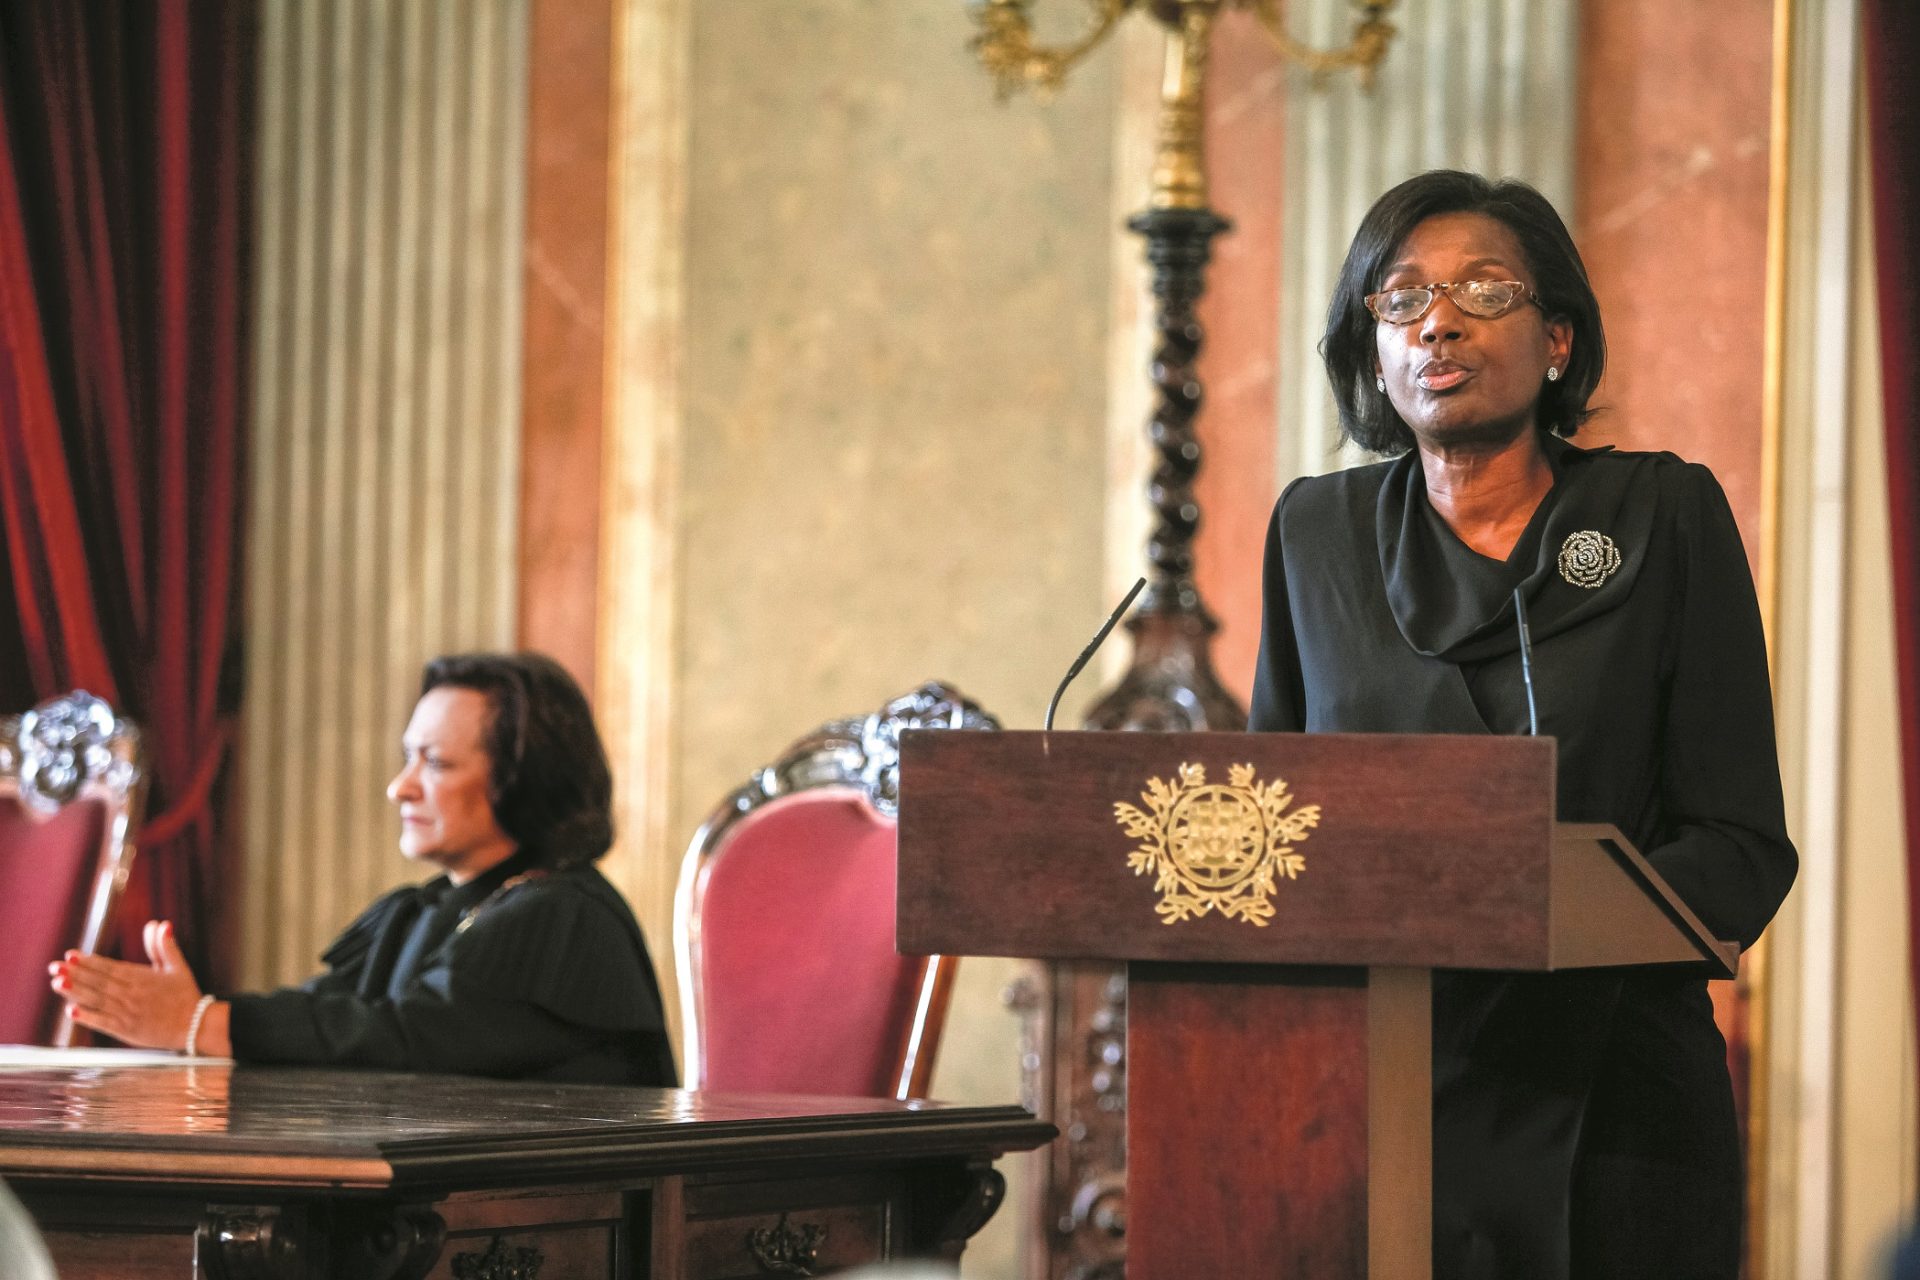 Ministra da Justiça adia visita a Angola “a pedido das autoridades angolanas”